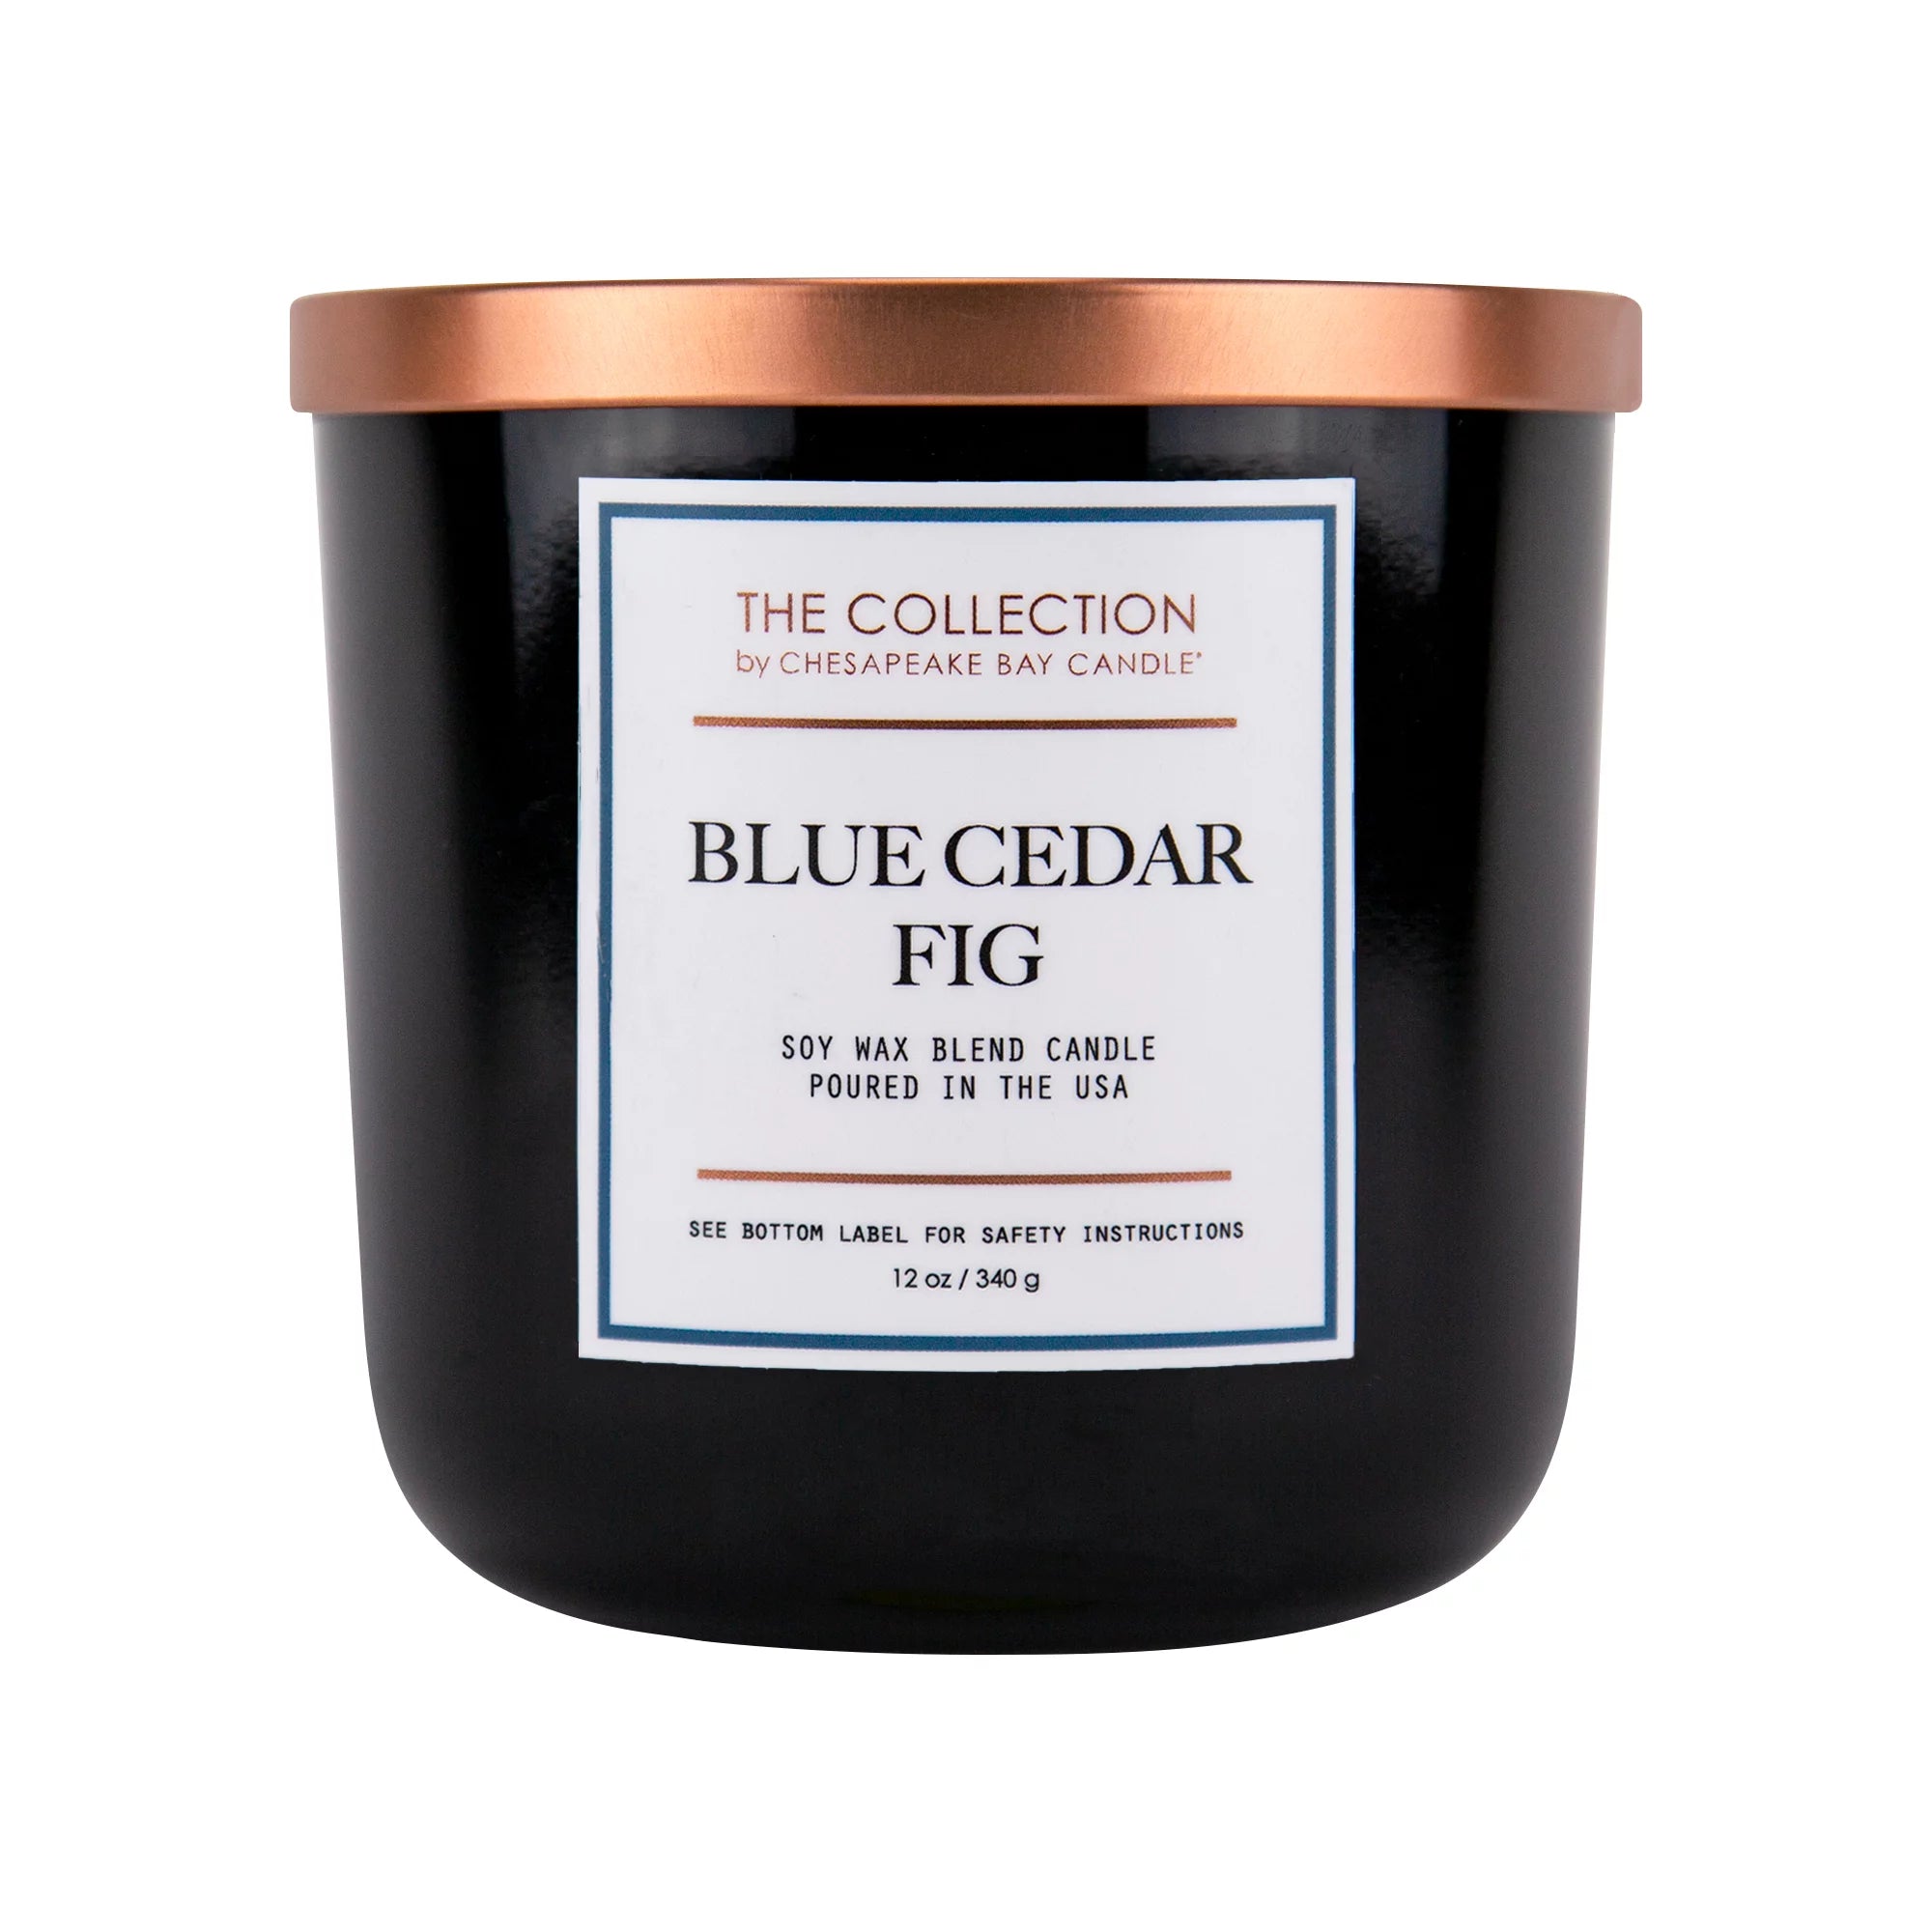 Blue Cedar Fig Candle